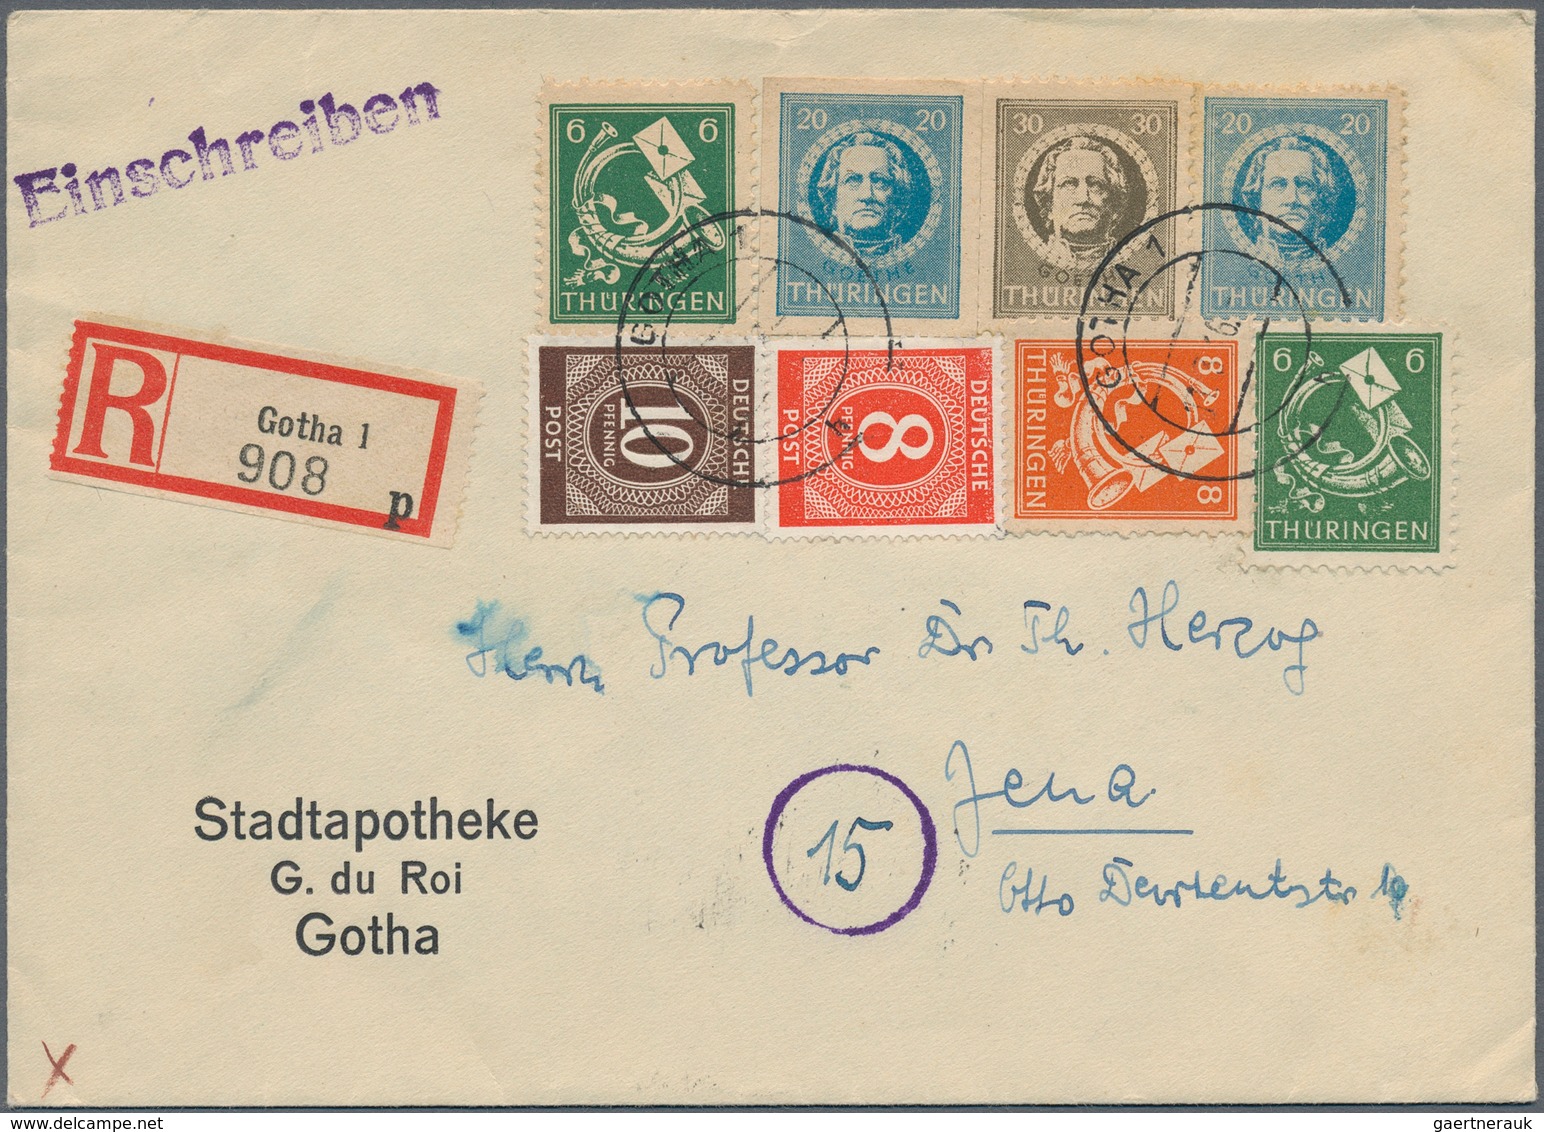 Nachlässe: 1900/1990 ca., 6 Briefauswahlhefte mit überwiegend deutschen Briefen und Ganzsachen mit H